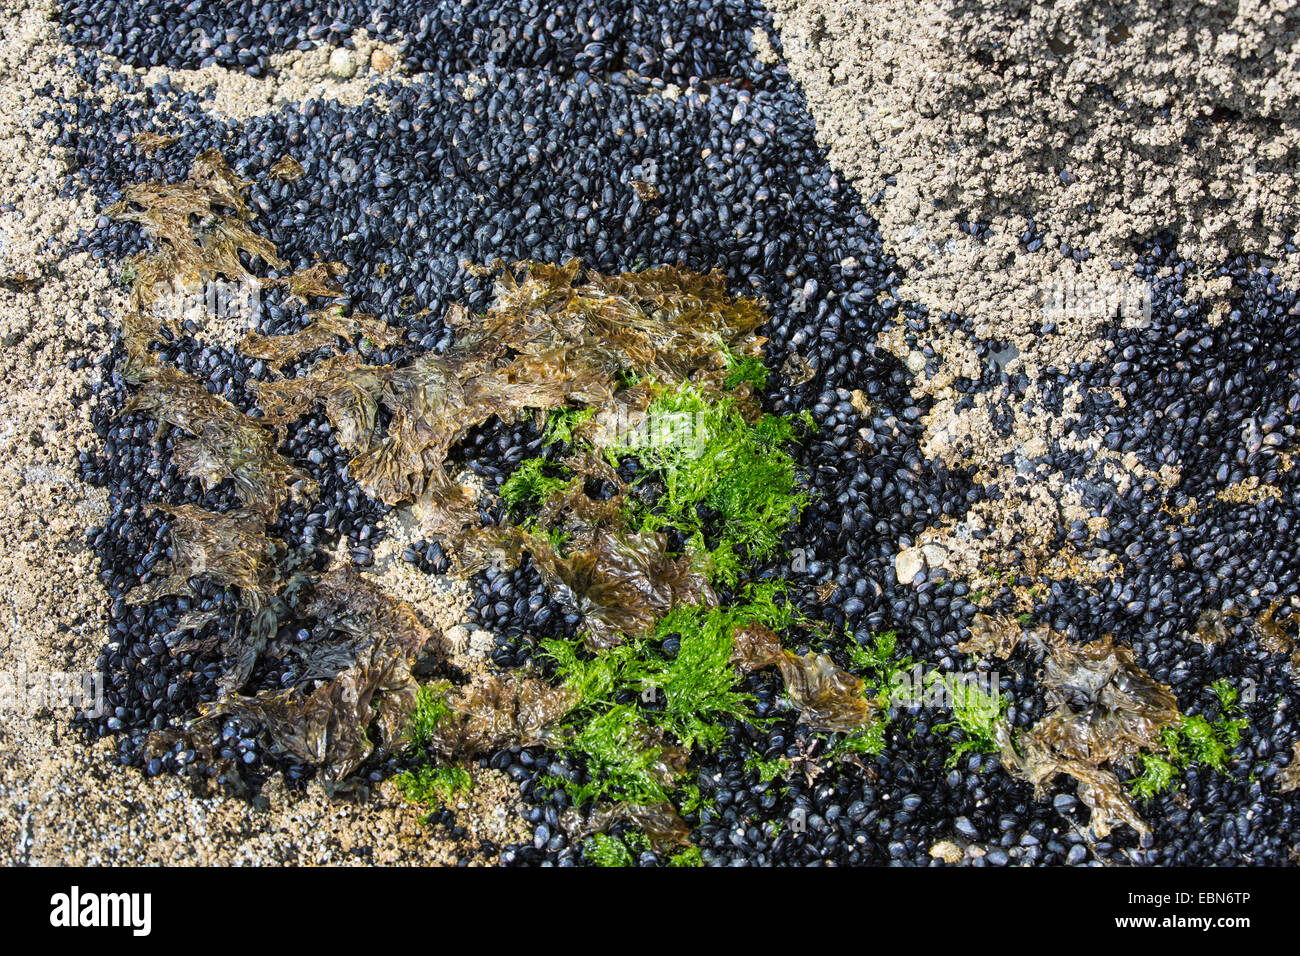 La moule bleue, bay mussel, Moule commune commune, la moule bleue (Mytilus edulis), colonie à l'embouchure, l'Irlande, tête d'Downpatrik Banque D'Images